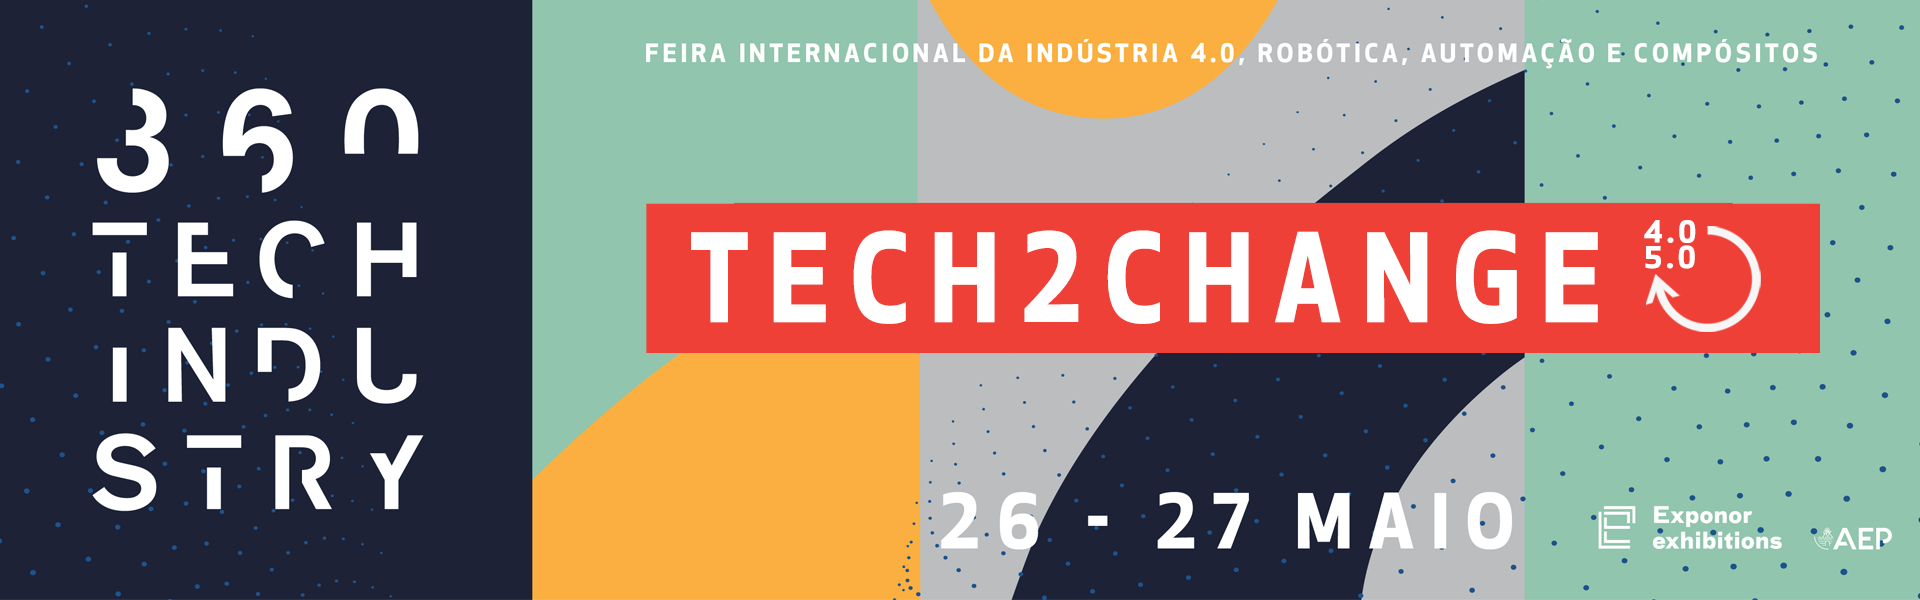 360 TECH INDUSTRY - Feira Internacional da Indústria 4.0, Robótica, Automação e Compósitos